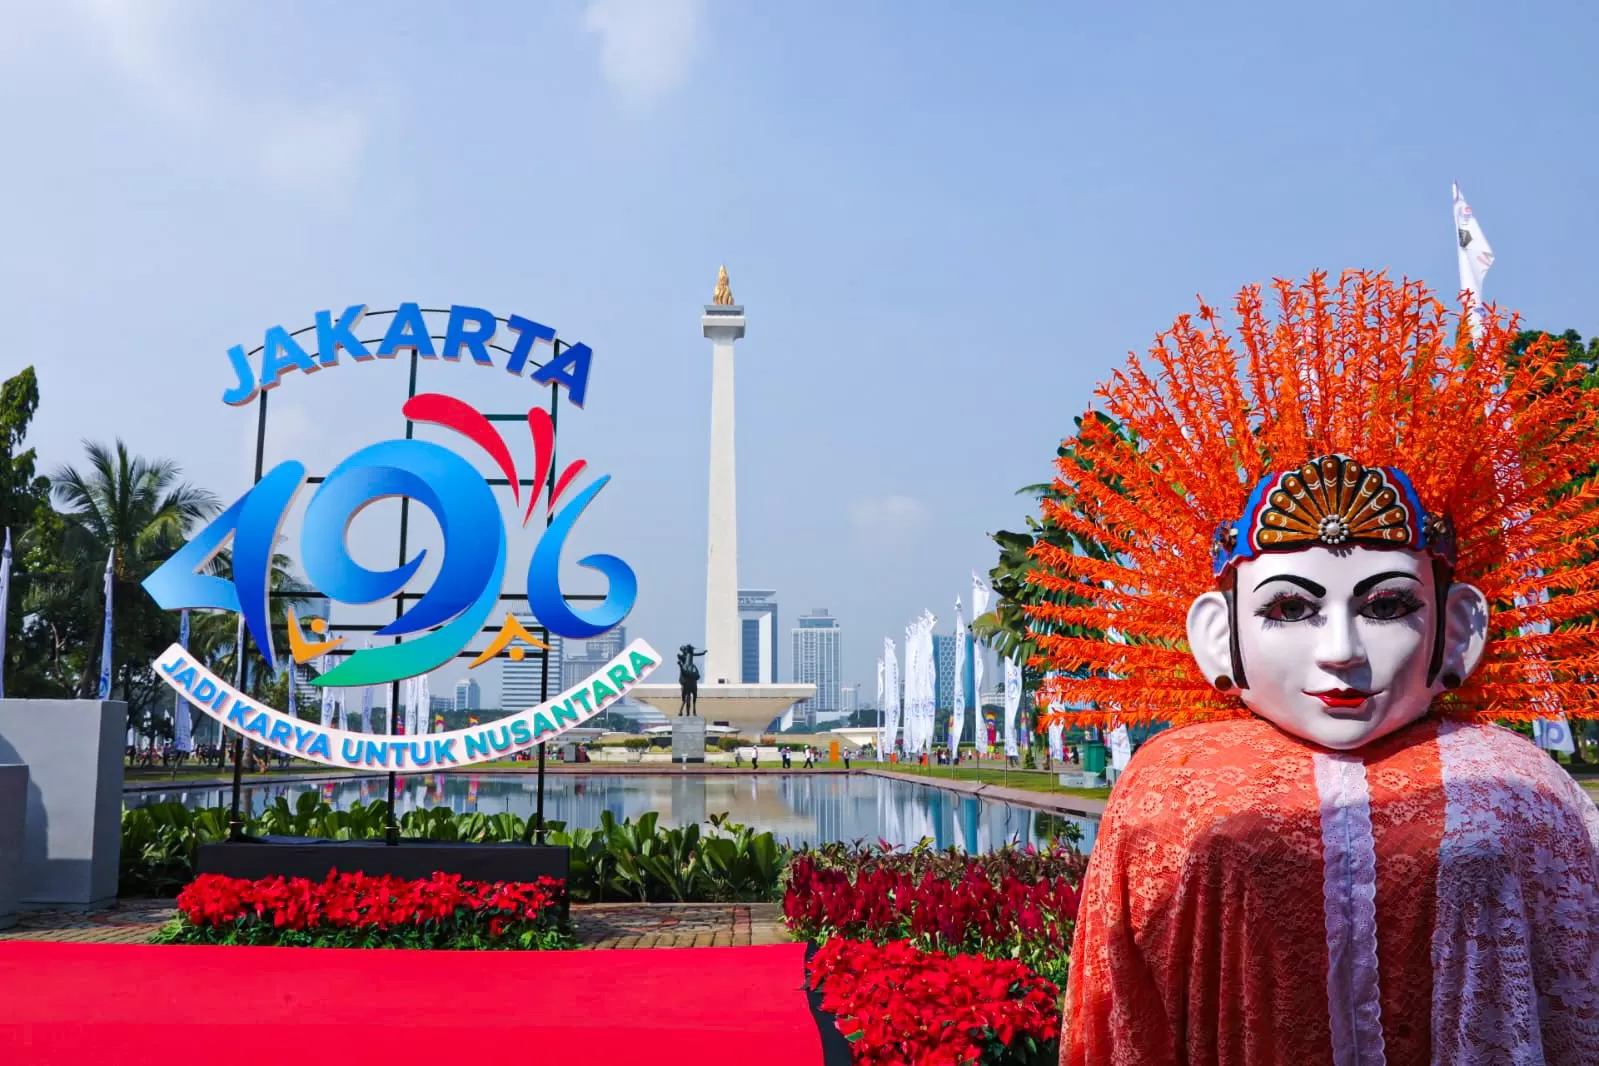 Sambut HUT DKI Jakarta ke-496, Ini Rangkaian Acara yang Wajib Kamu Datangi